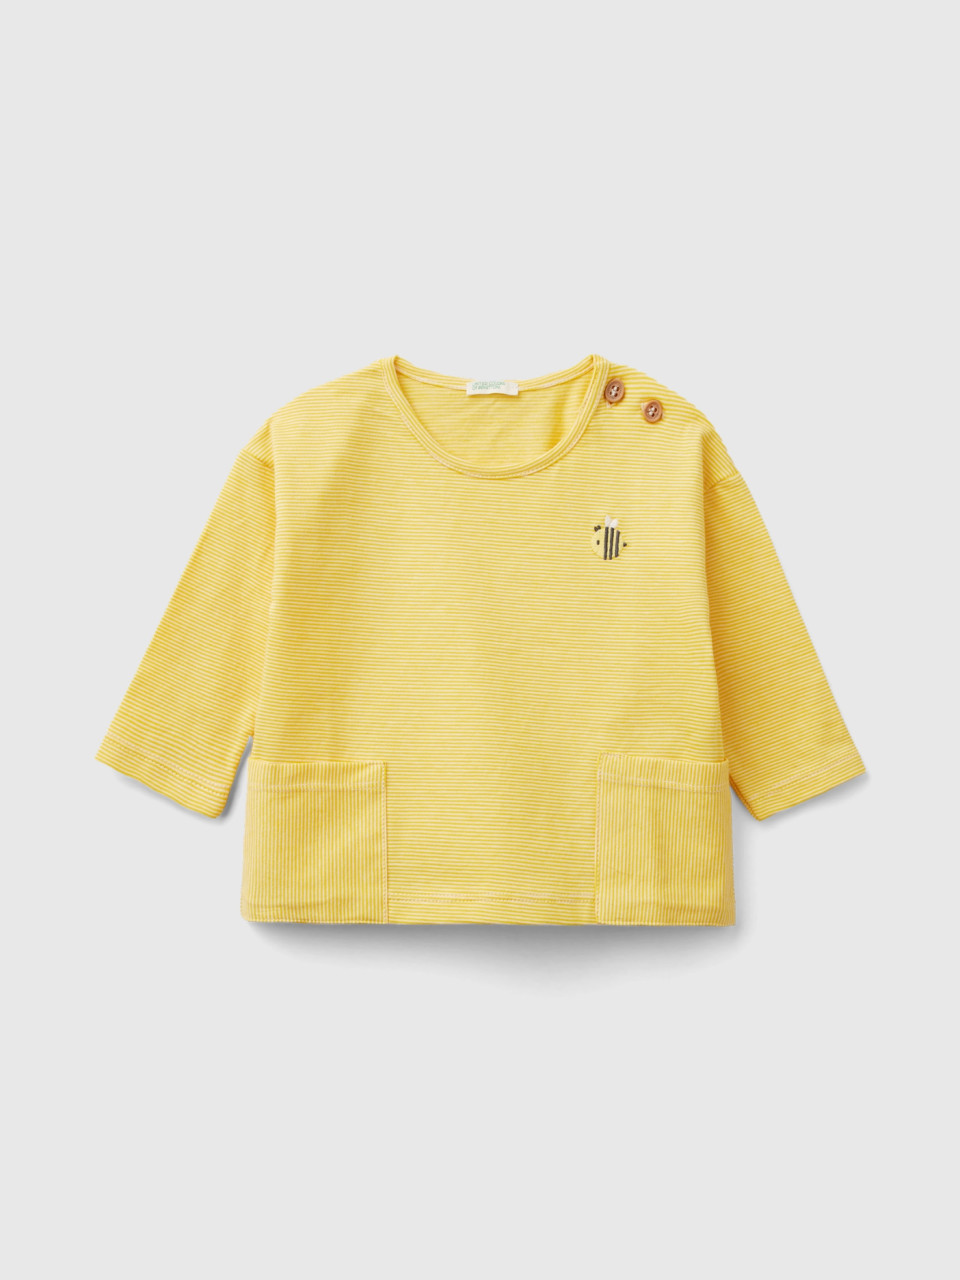 Benetton, Shirt Mit Stickerei, größe 62, Gelb